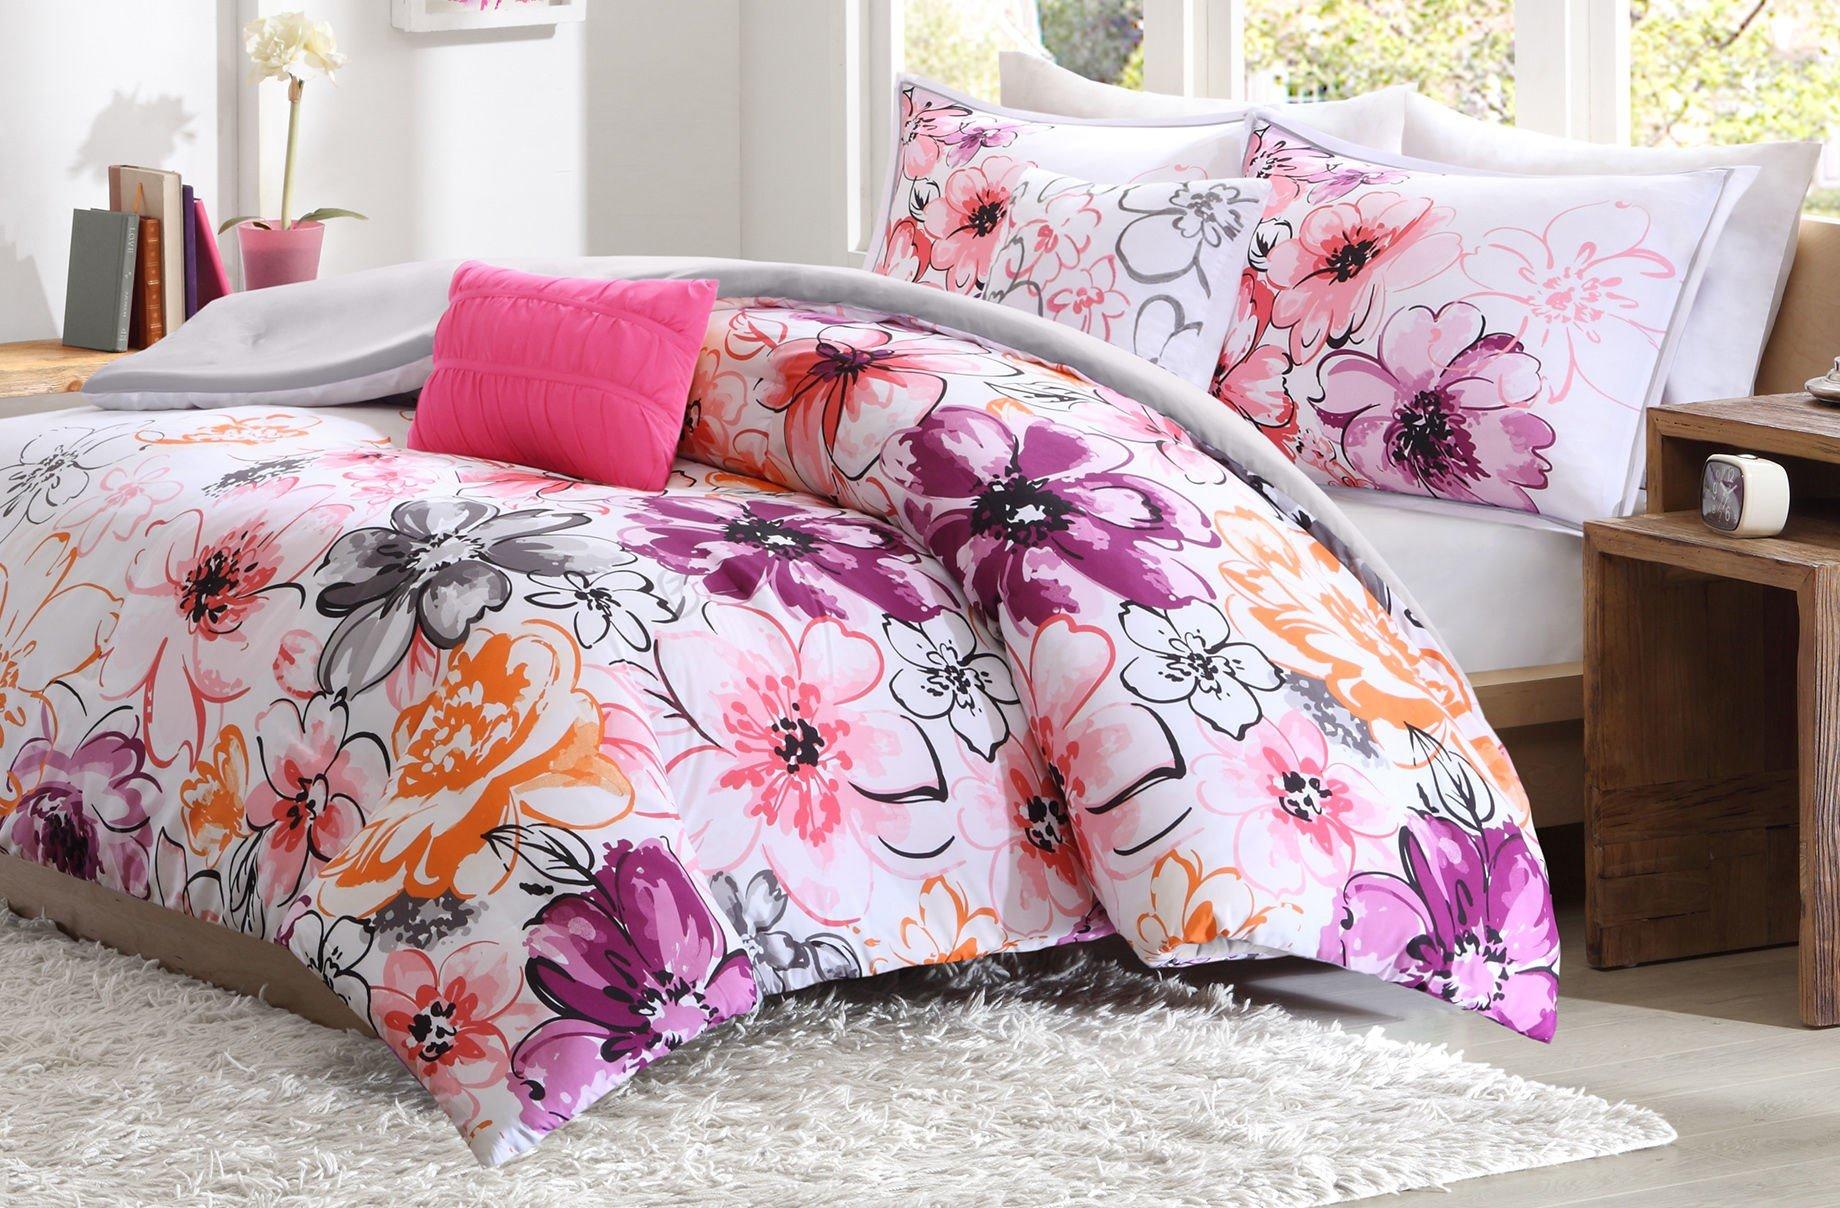 Intelligent Design Olivia Pink Comforter Set